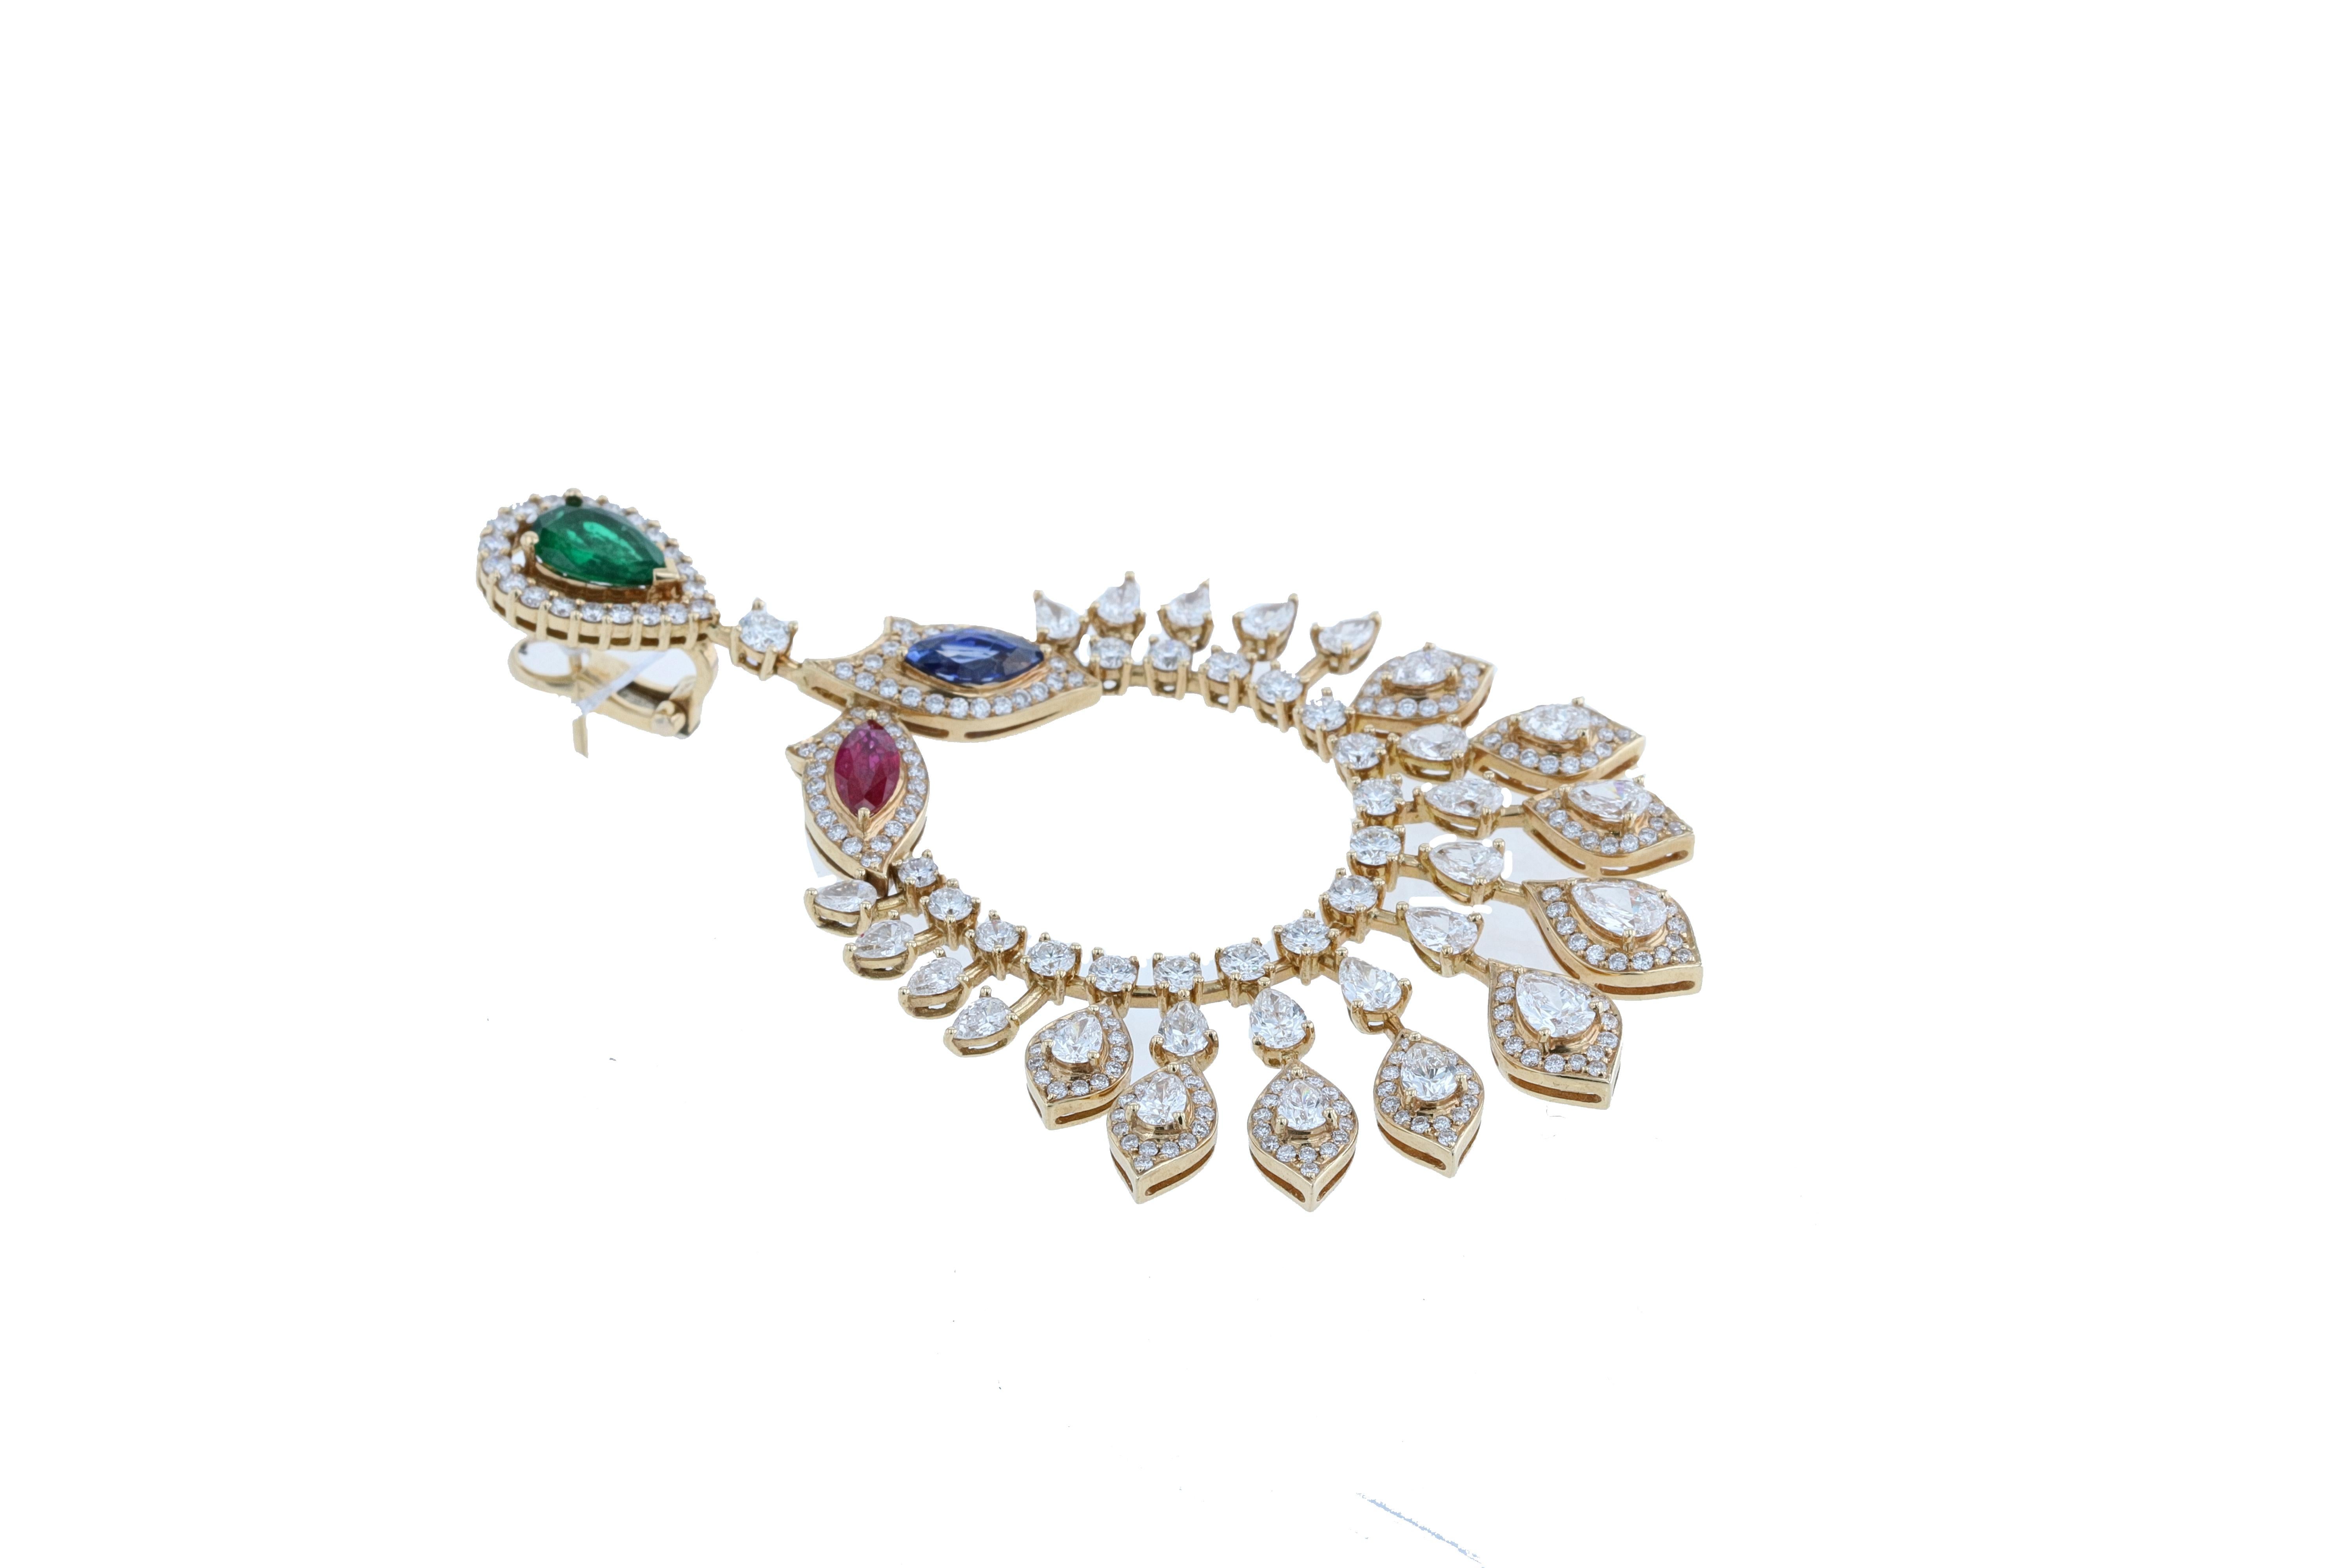 Amwaj Jewelry Emerald, Sapphire and Ruby Chandelier Earrings in 18 Karat Gold For Sale 1